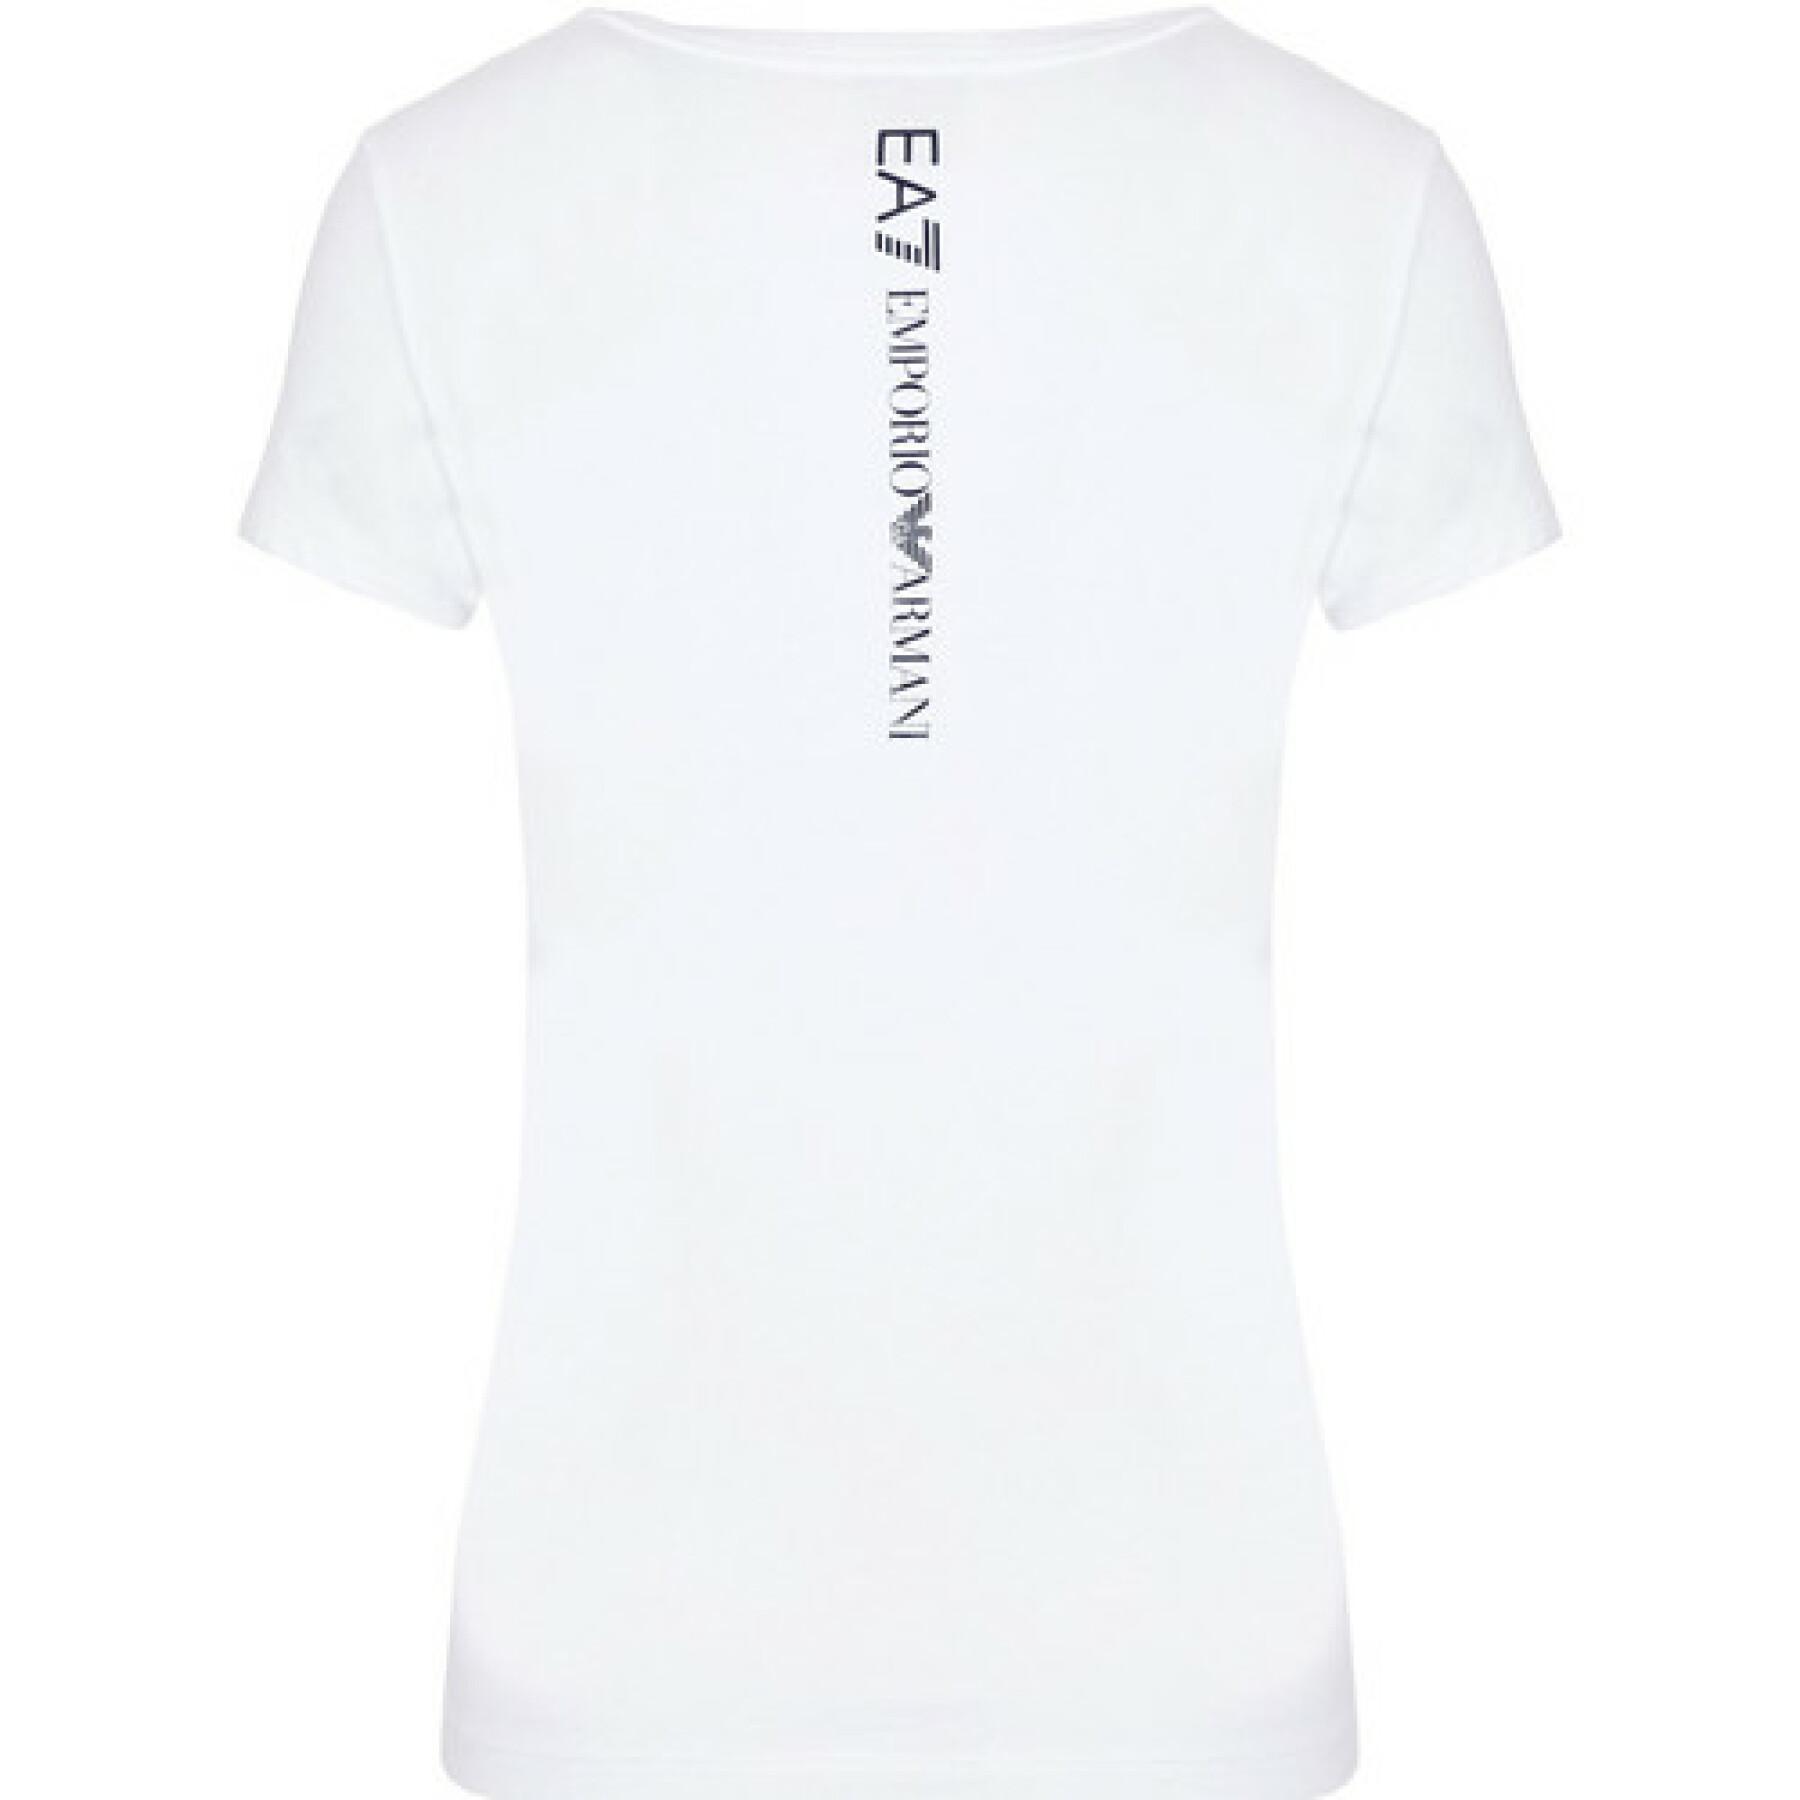 T-shirt för kvinnor EA7 Emporio Armani